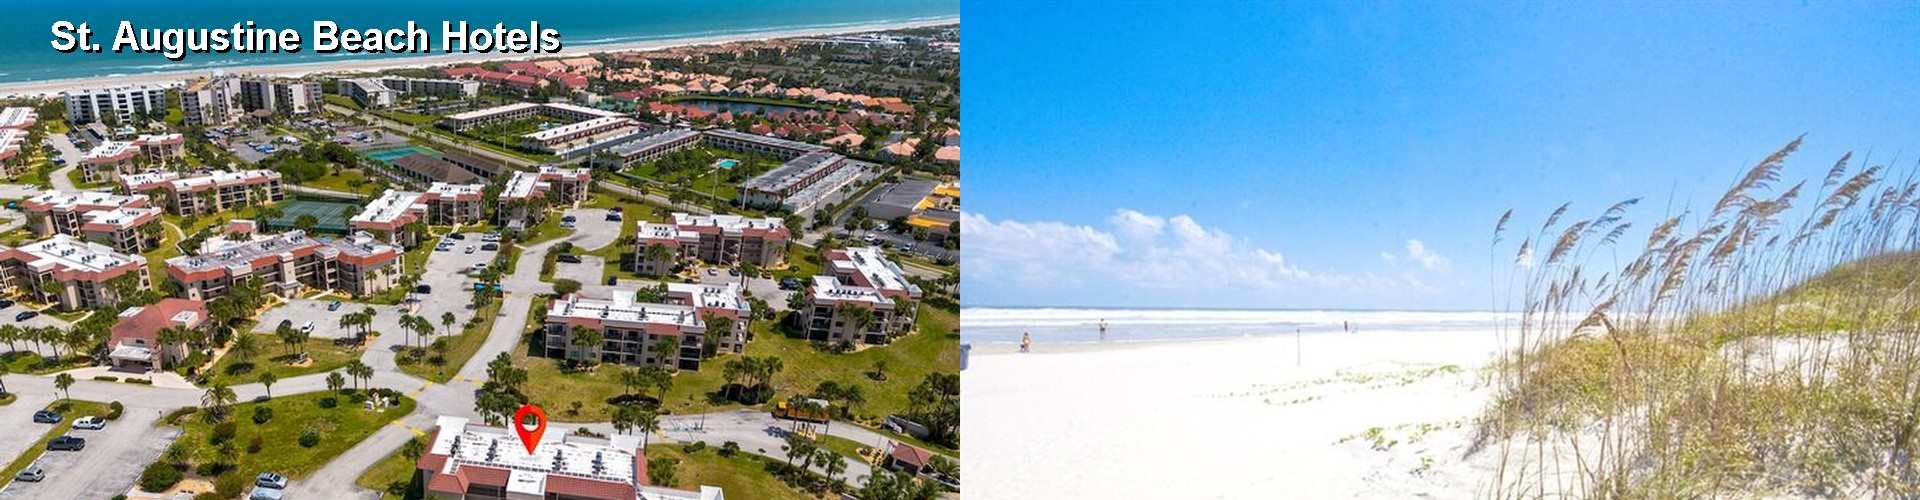 5 Best Hotels near St. Augustine Beach